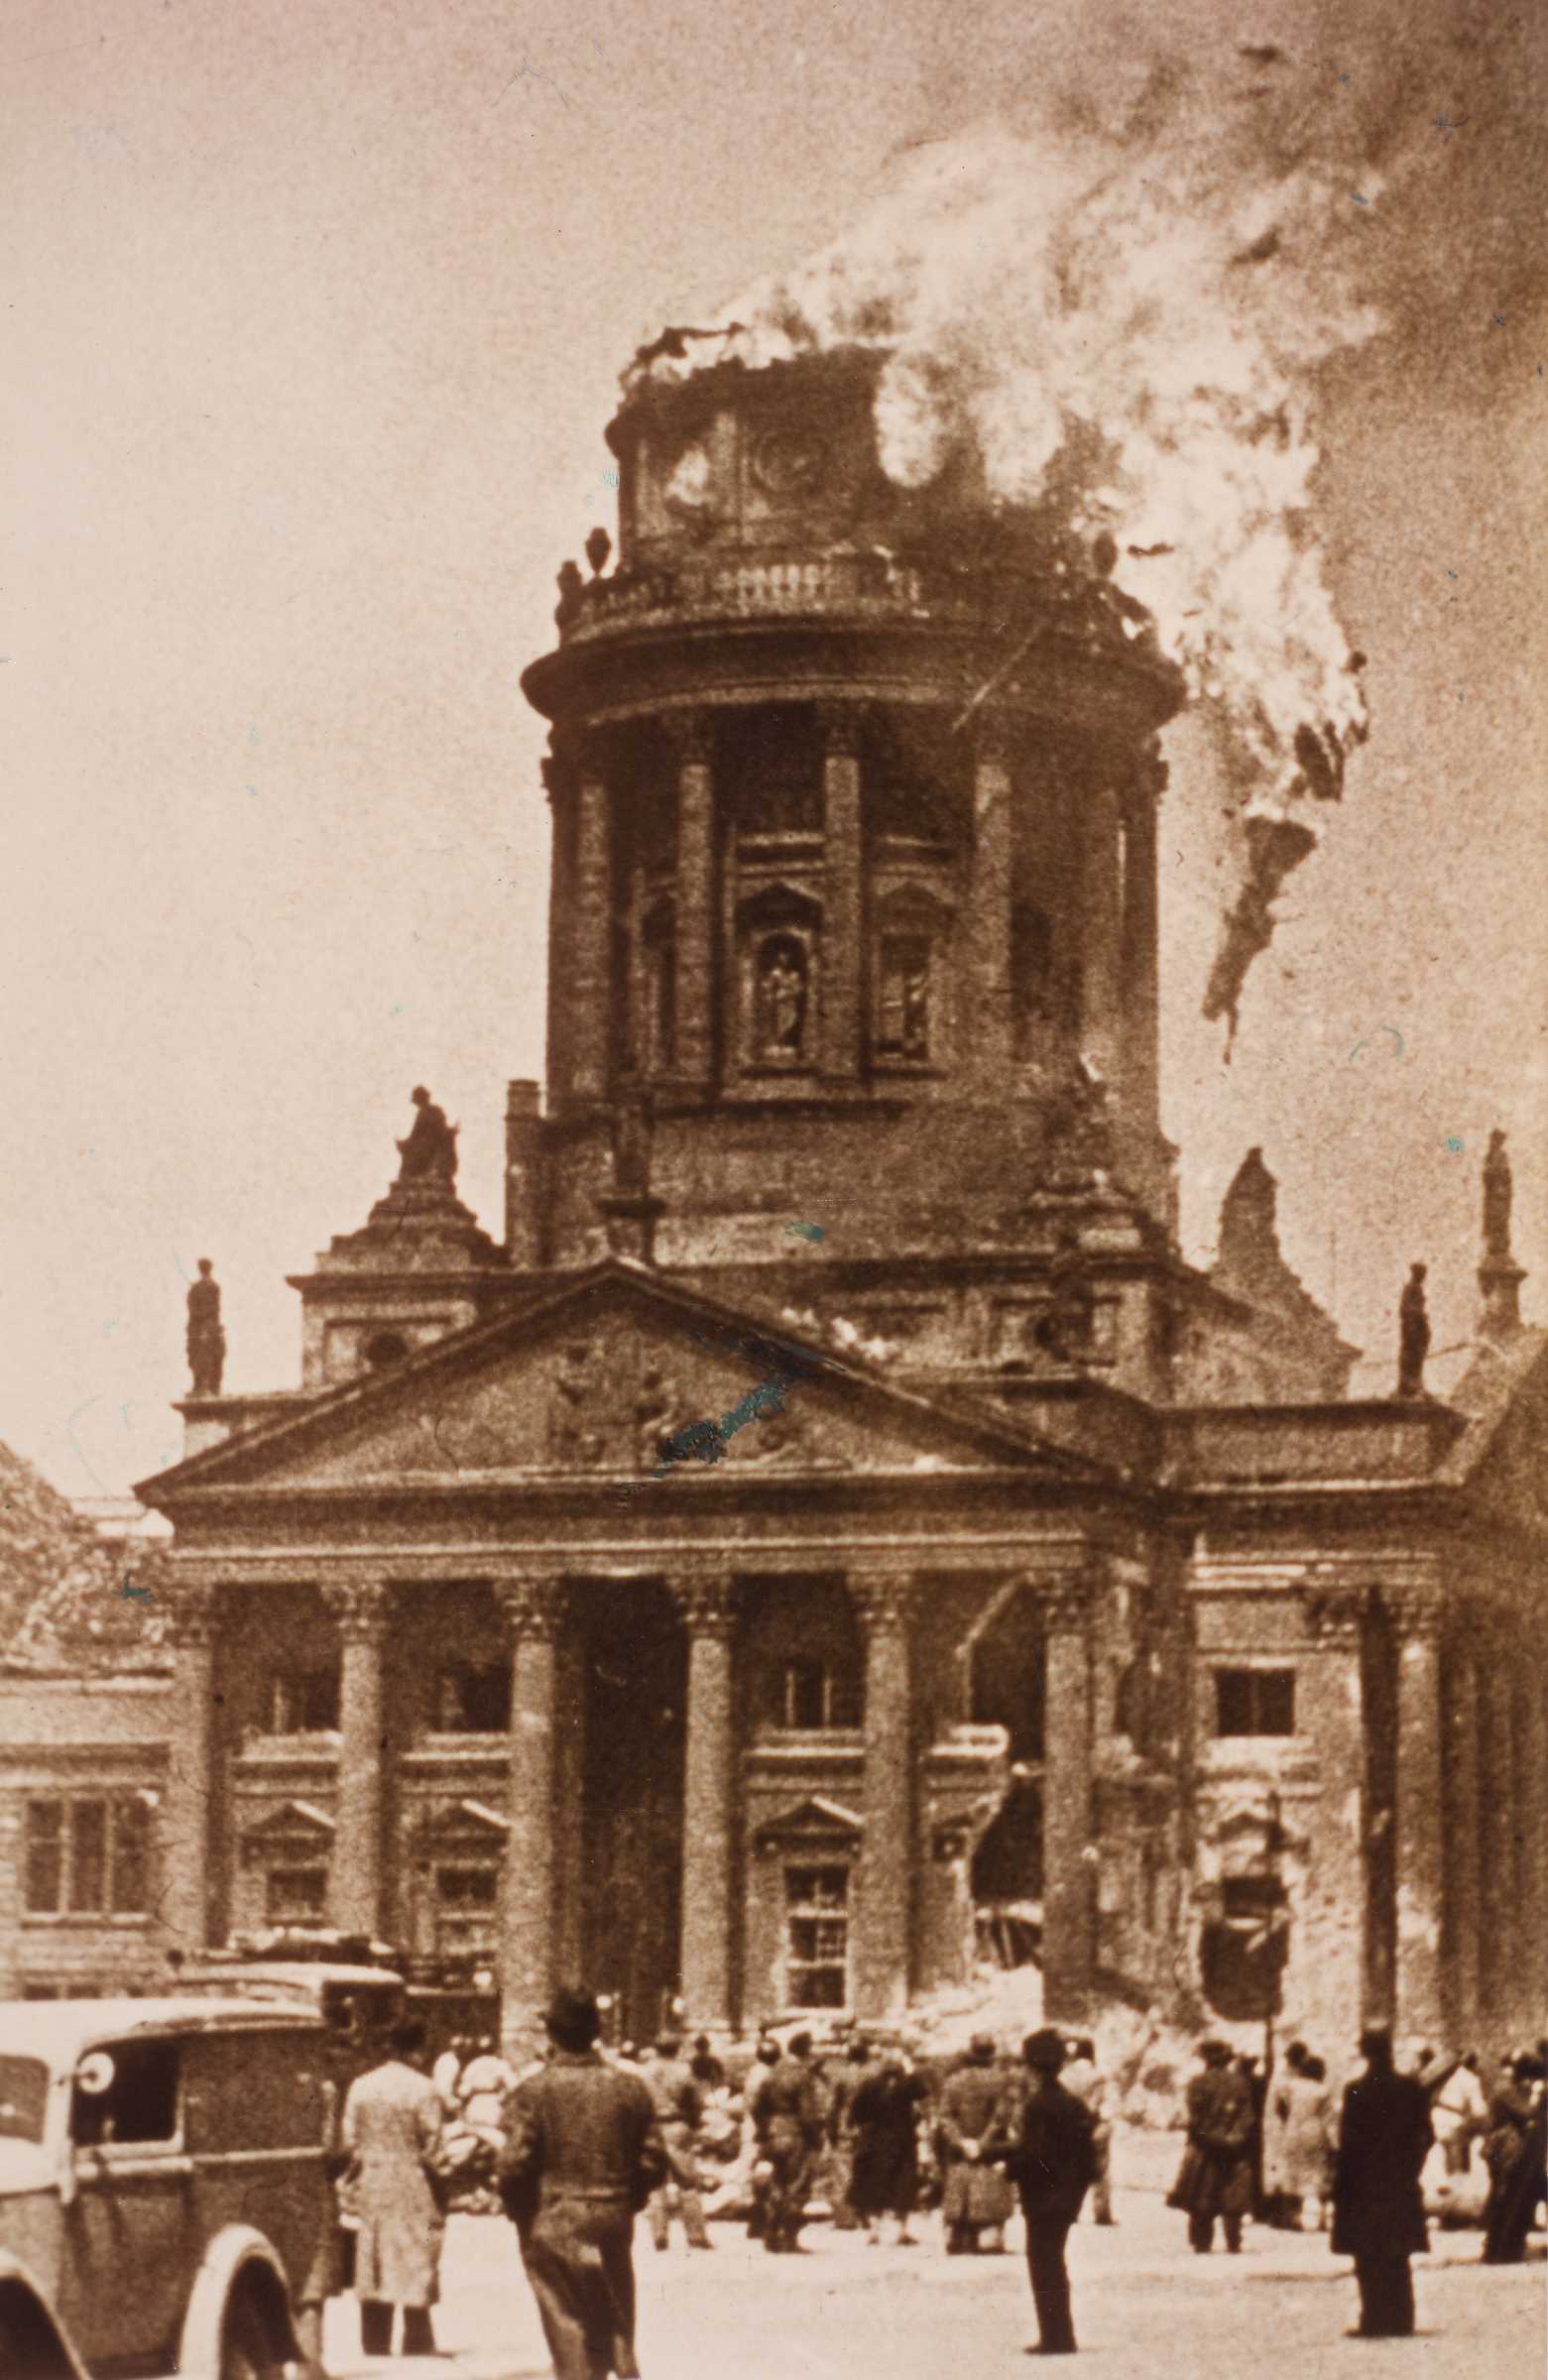 Französischer Dom Berlin am 24. Mai 1944: Herabstürzende Statue nach US-Luftangriff.